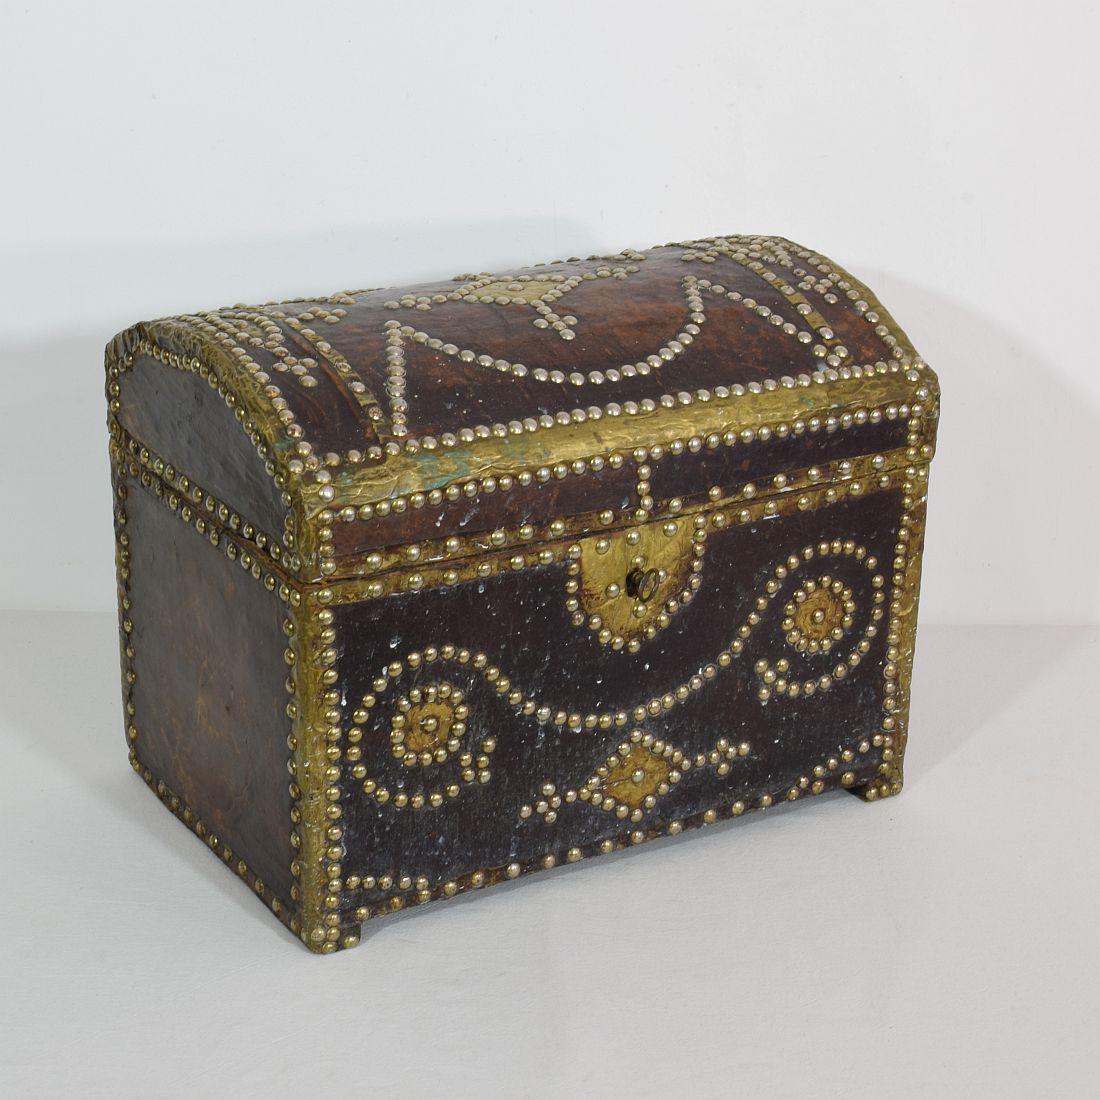 Preciosa caja Folk Art envejecida hecha de madera y forrada de cuero. Cerradura y llave de trabajo.
Francia, hacia 1850
Envejecido, pequeñas pérdidas.